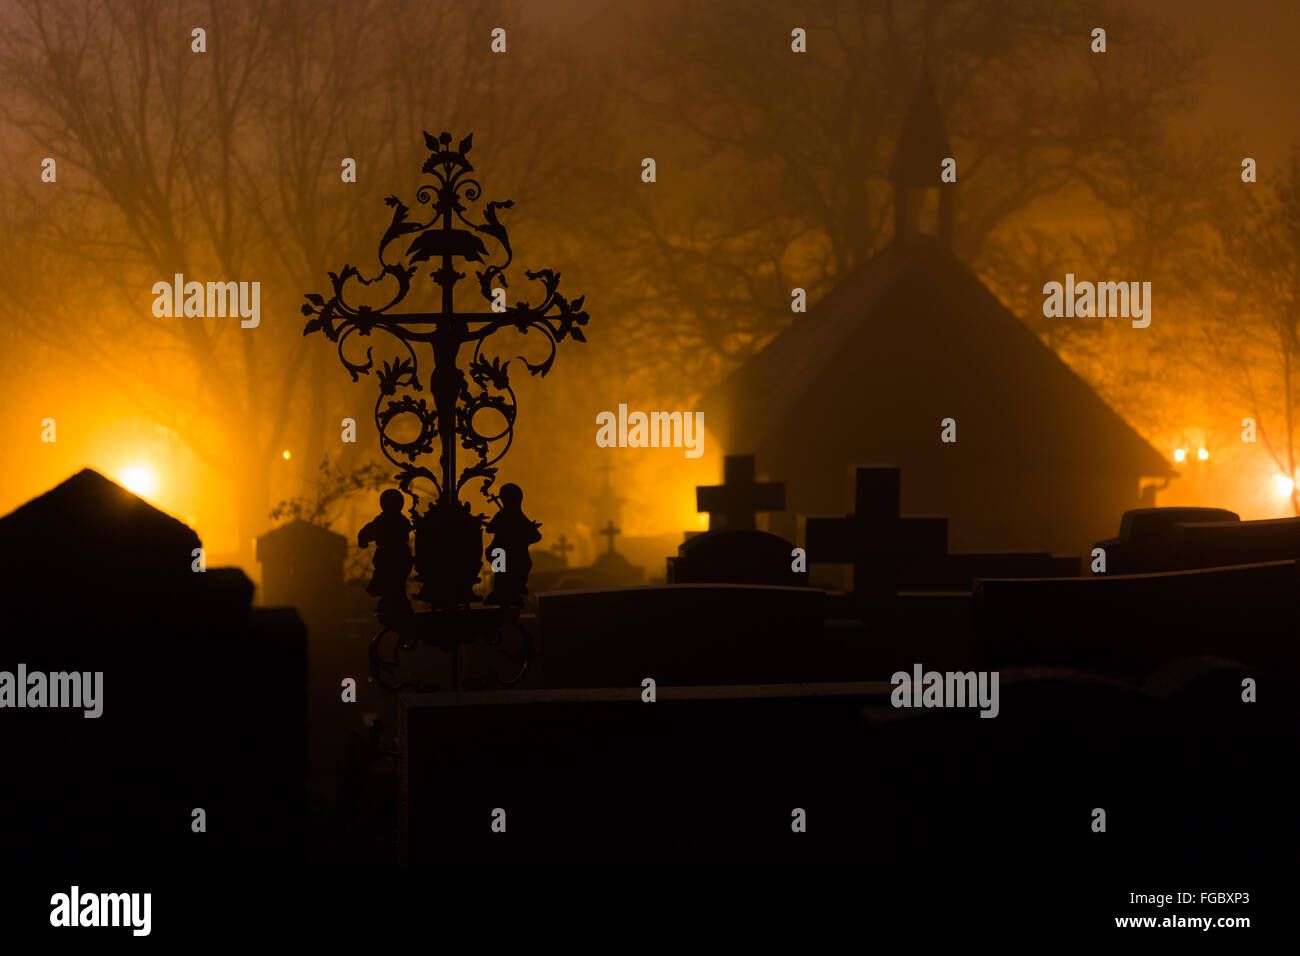 Silueta de cementerios en el cementerio contra los árboles durante la niebla por la noche Foto de stock